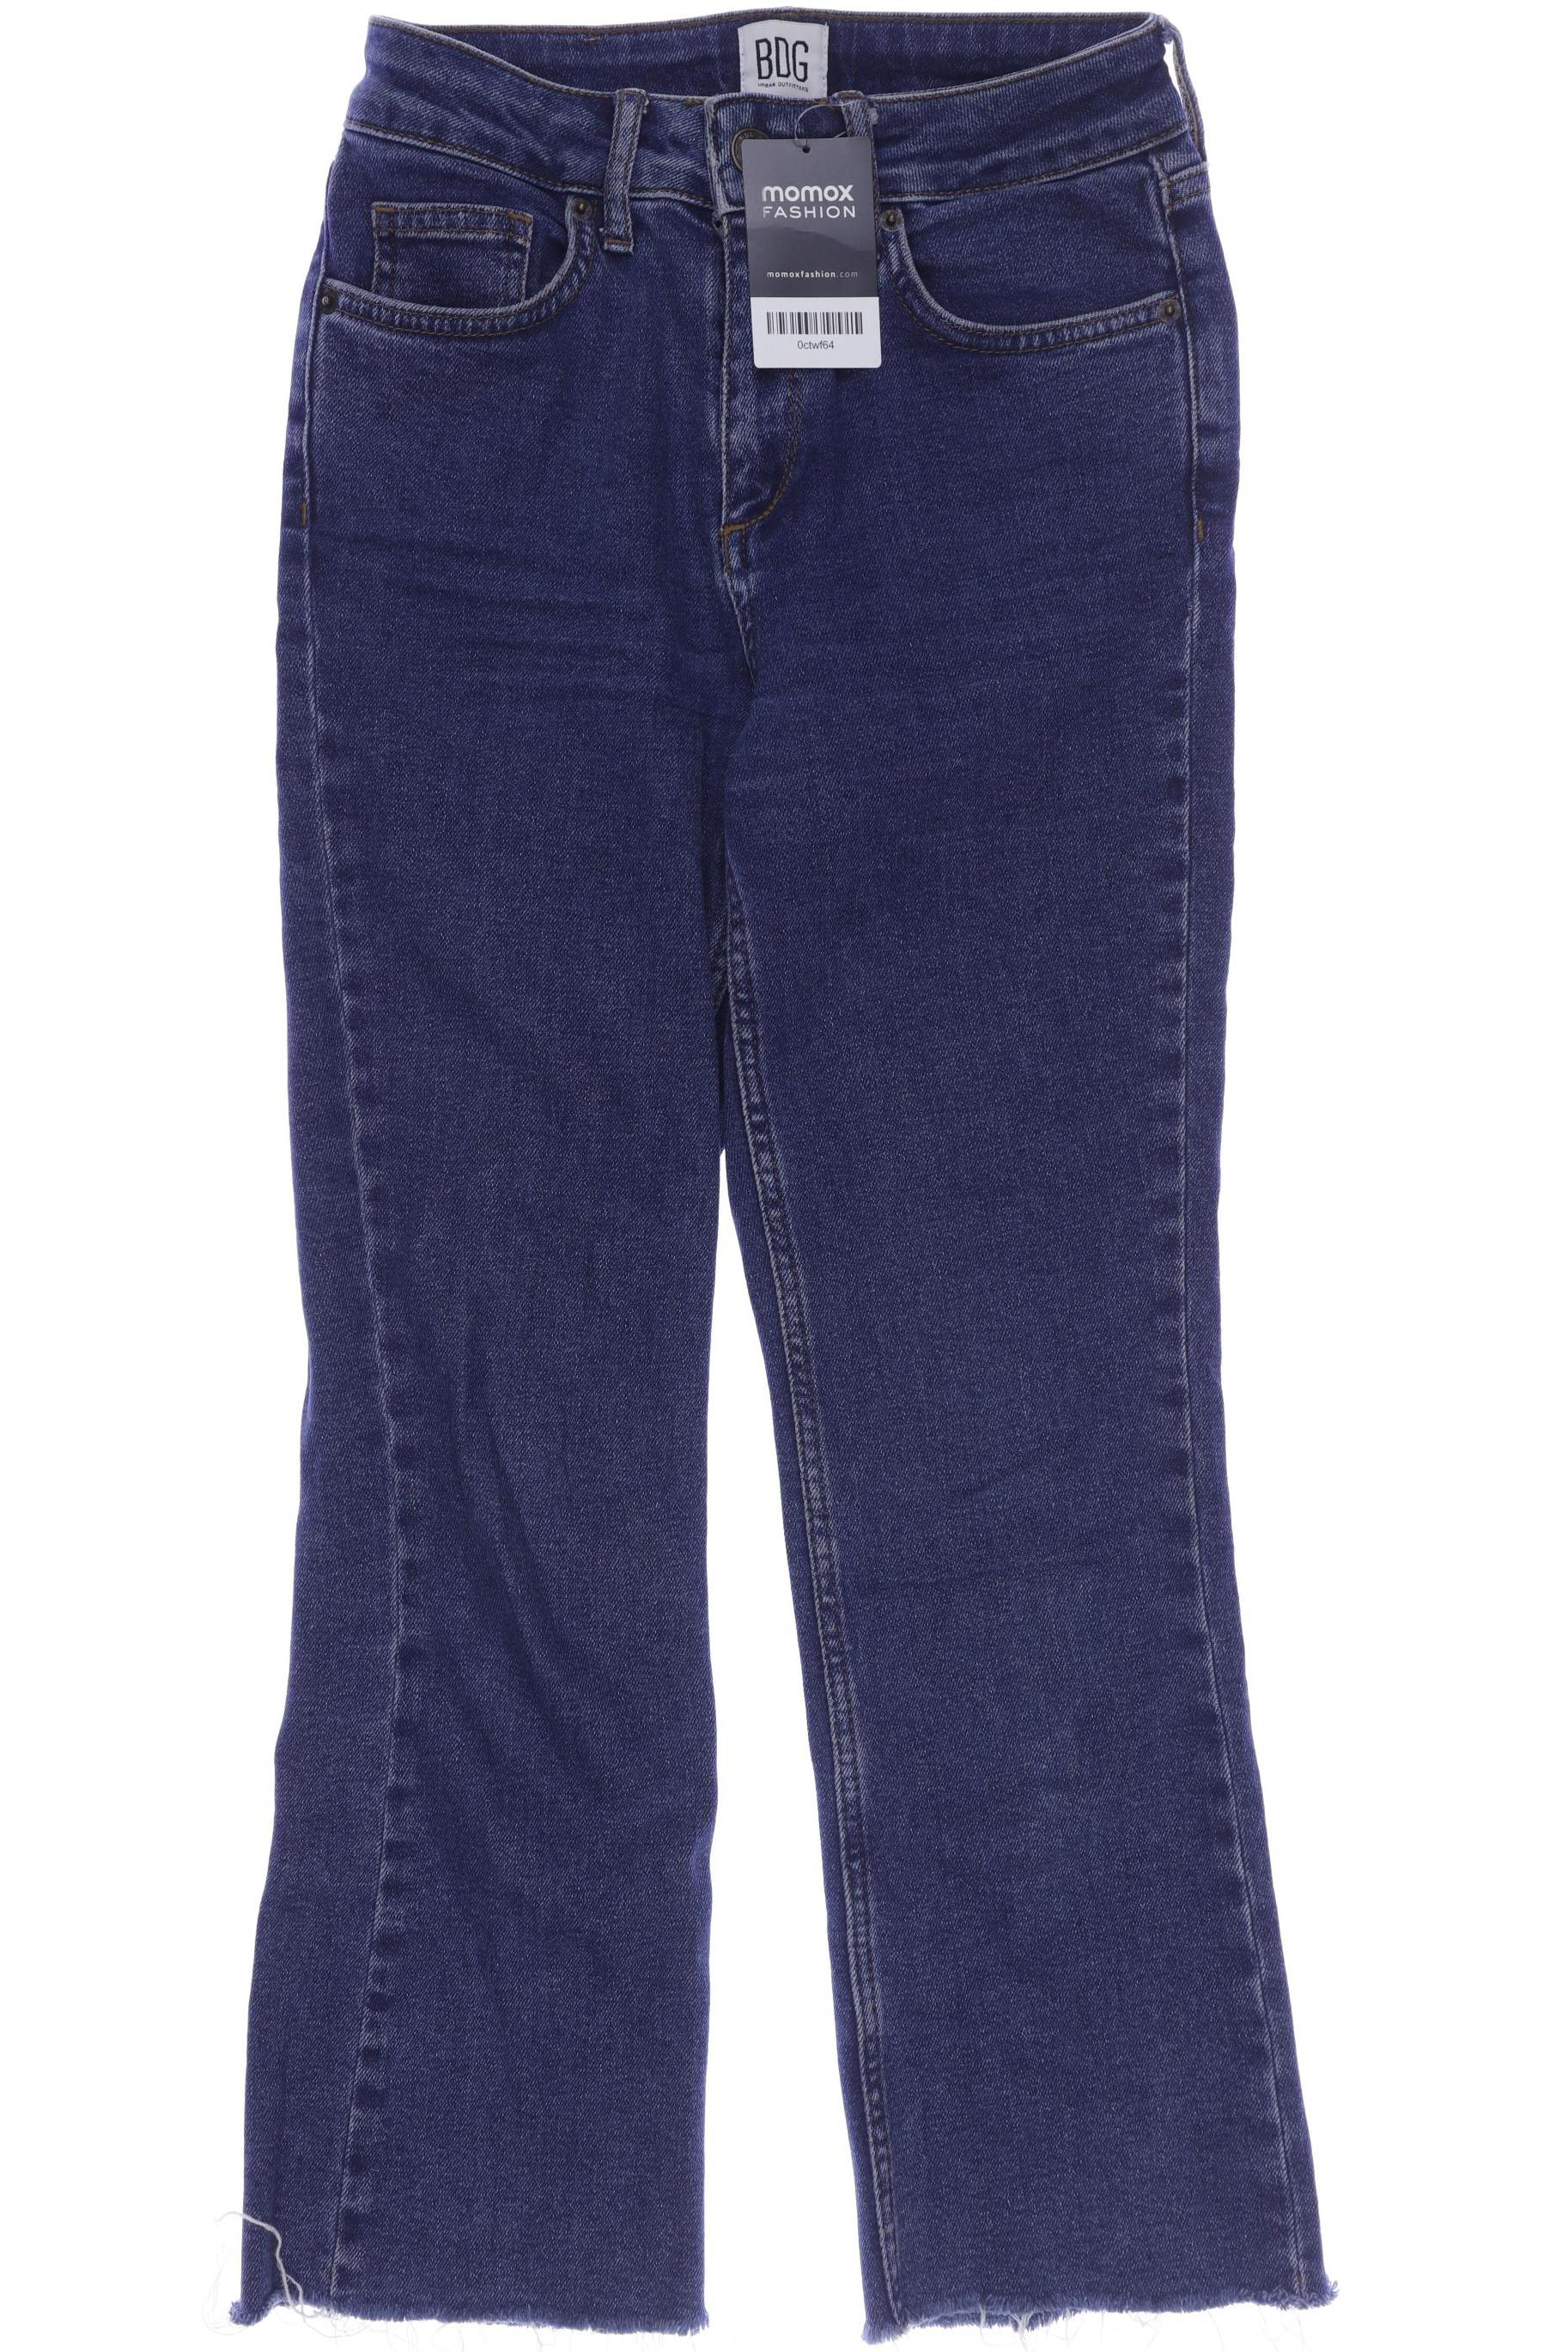 BDG Urban Outfitters Damen Jeans, blau, Gr. 32 von BDG Urban Outfitters